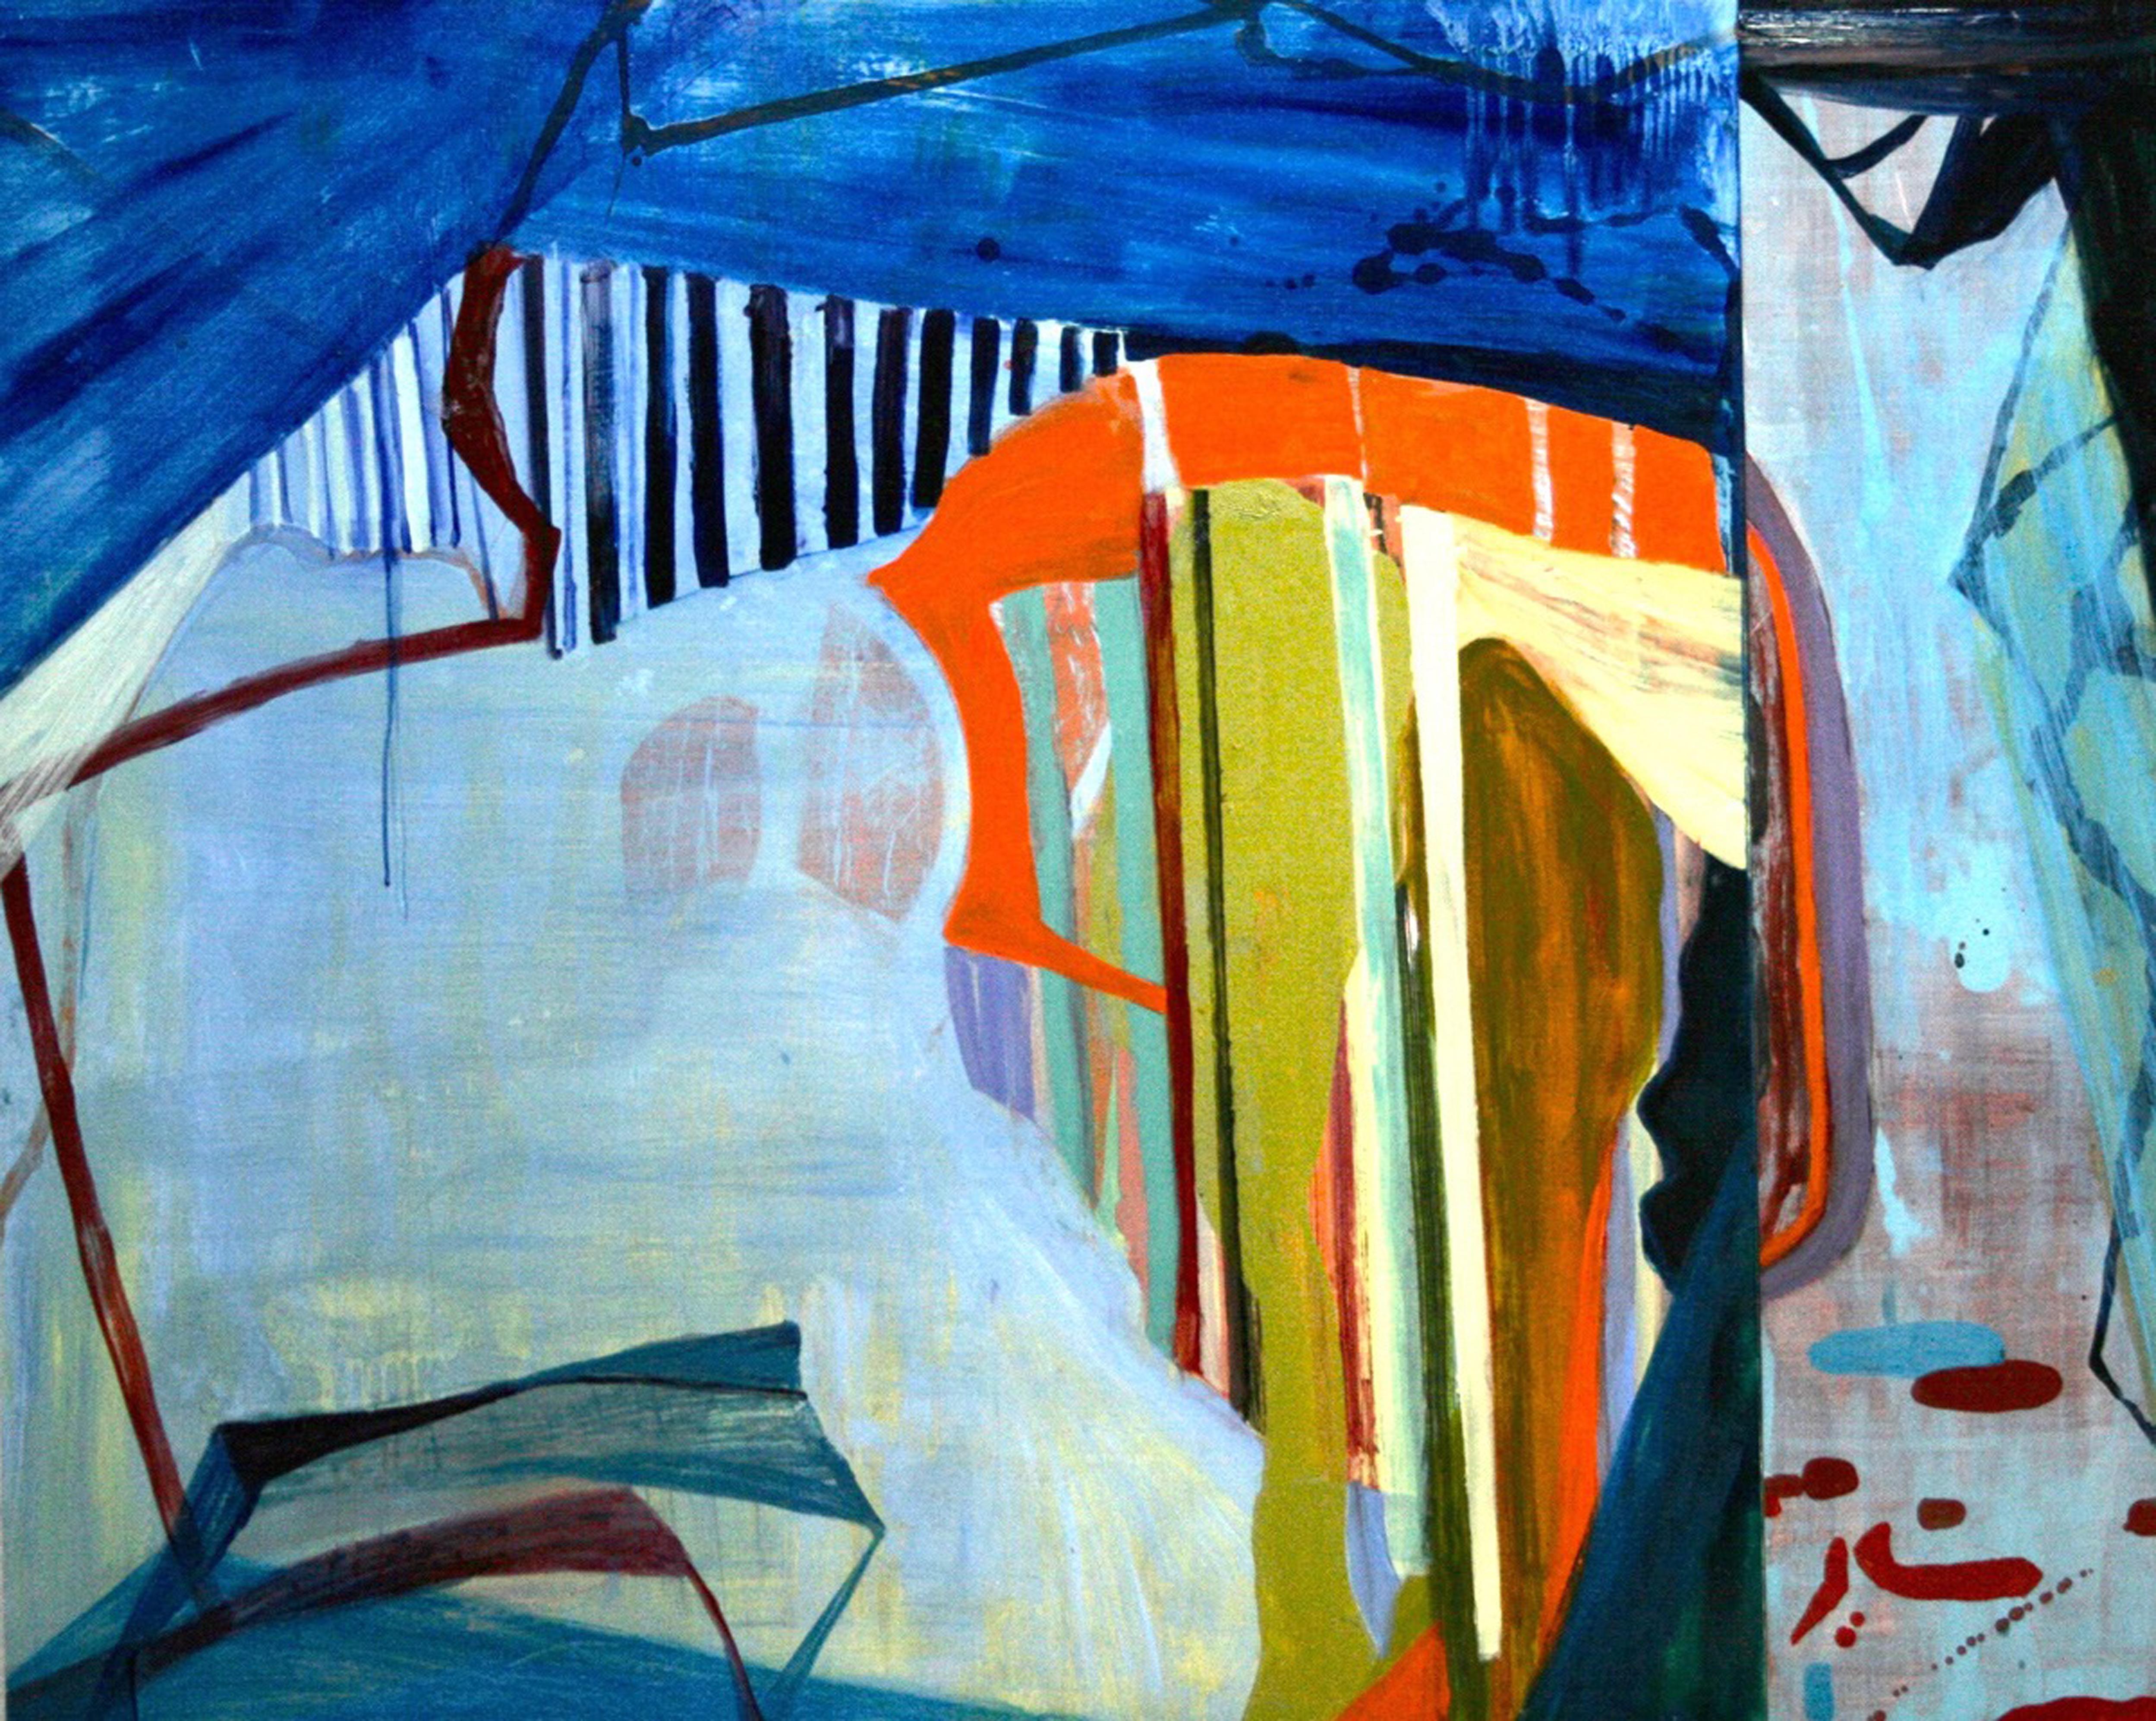 Abstract Painting Susan Sharp - « Water's Edge » (Bord de mer)  Abstraction dans des tons de bleu, rouge, orange, chartreuse, noir